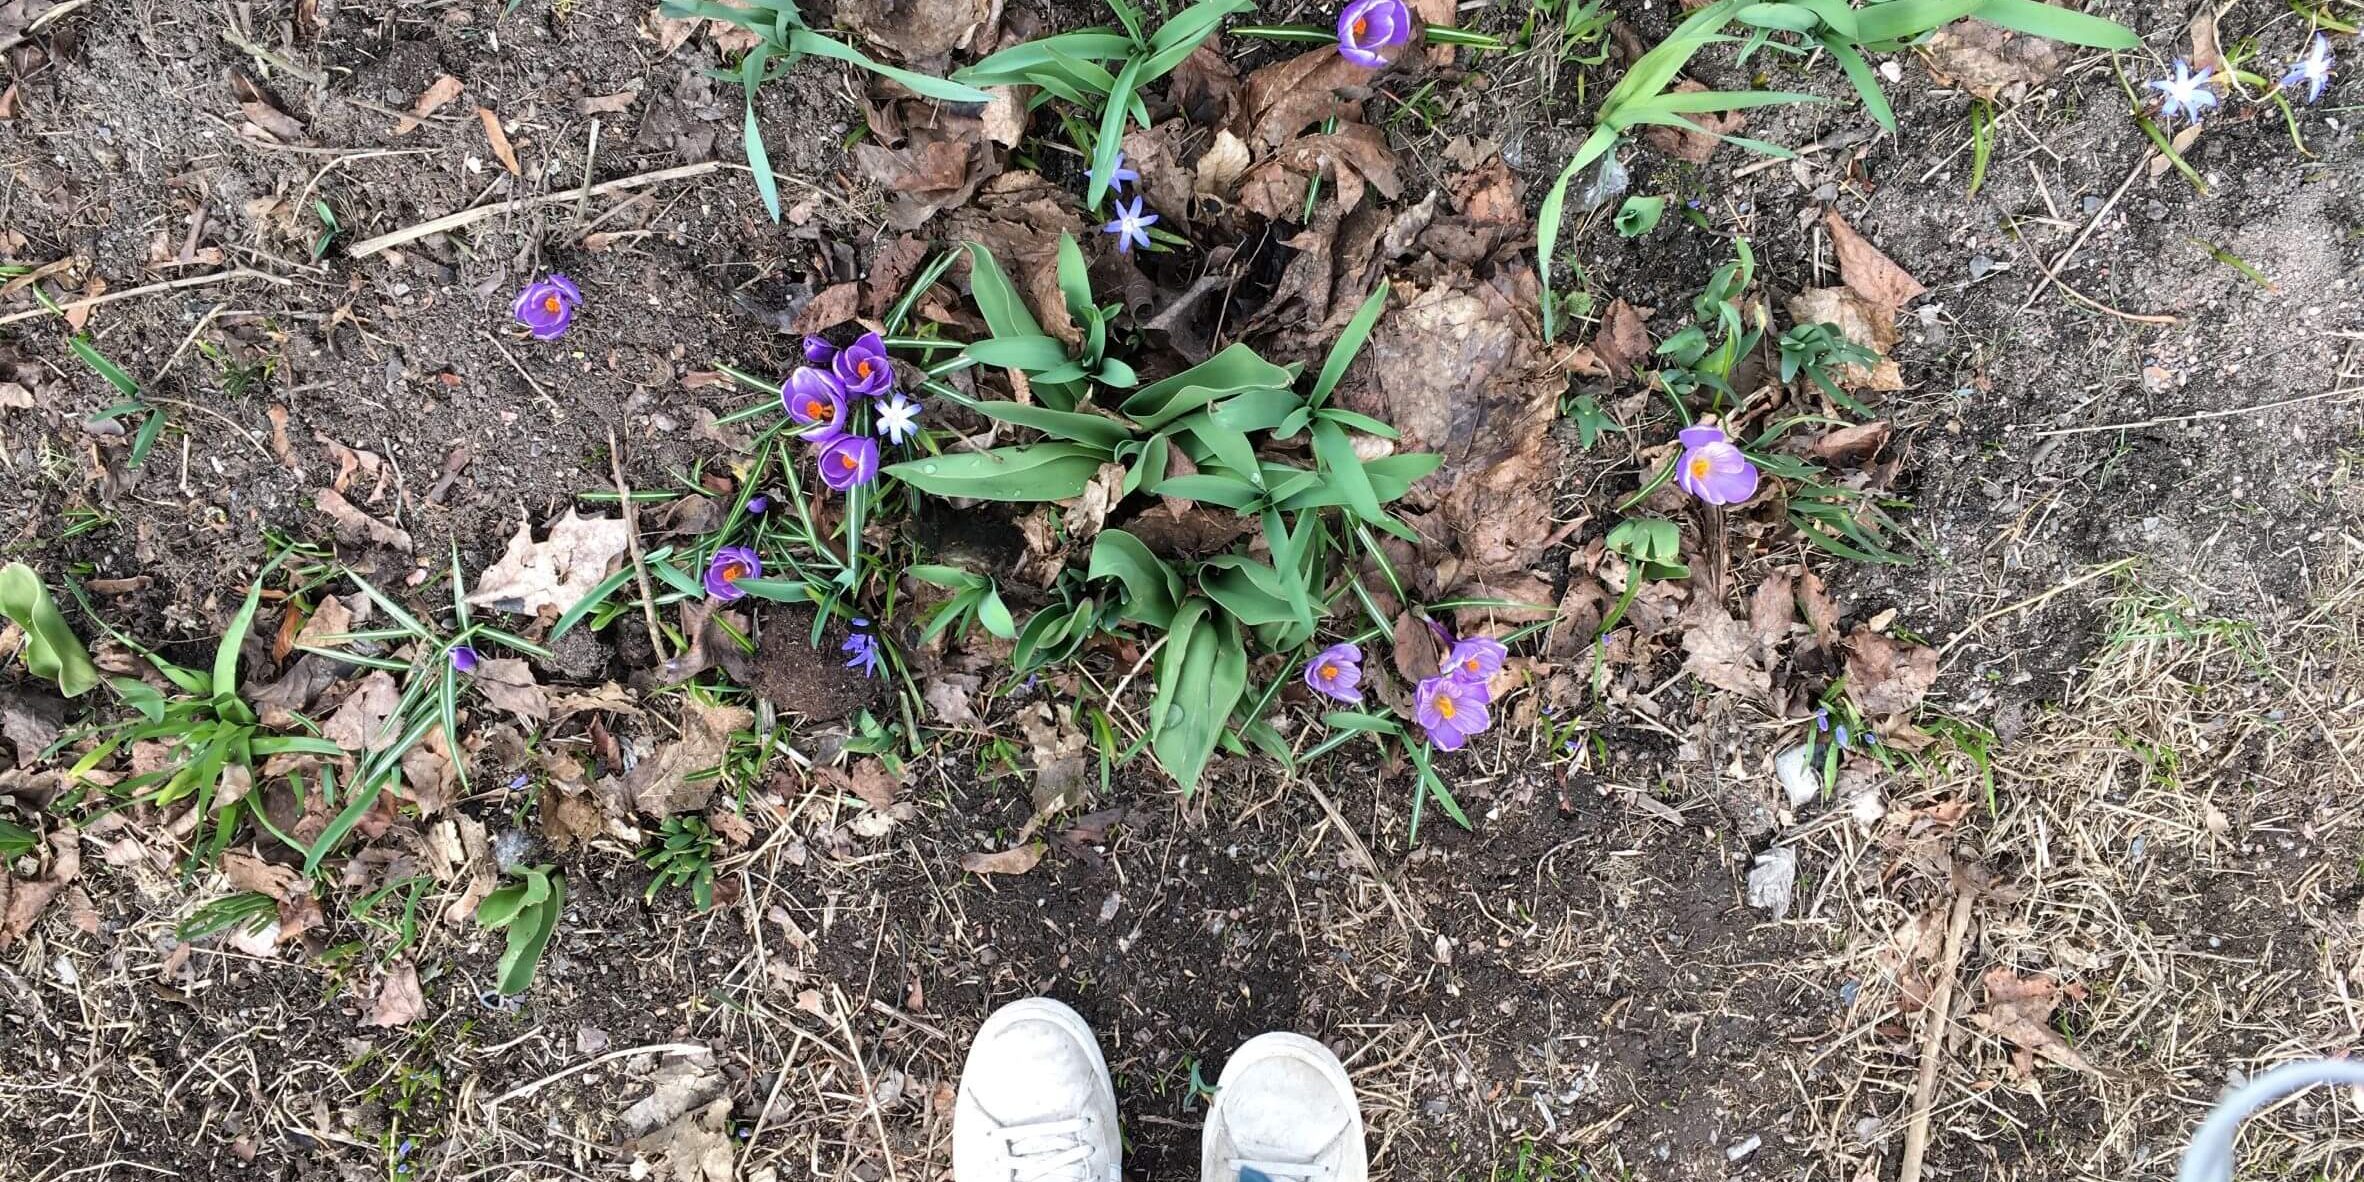 Vielä osittain paljaassa maassa kasvaa violetteja kukkia. Kuvassa näkyy myös kuvaajan kengät.